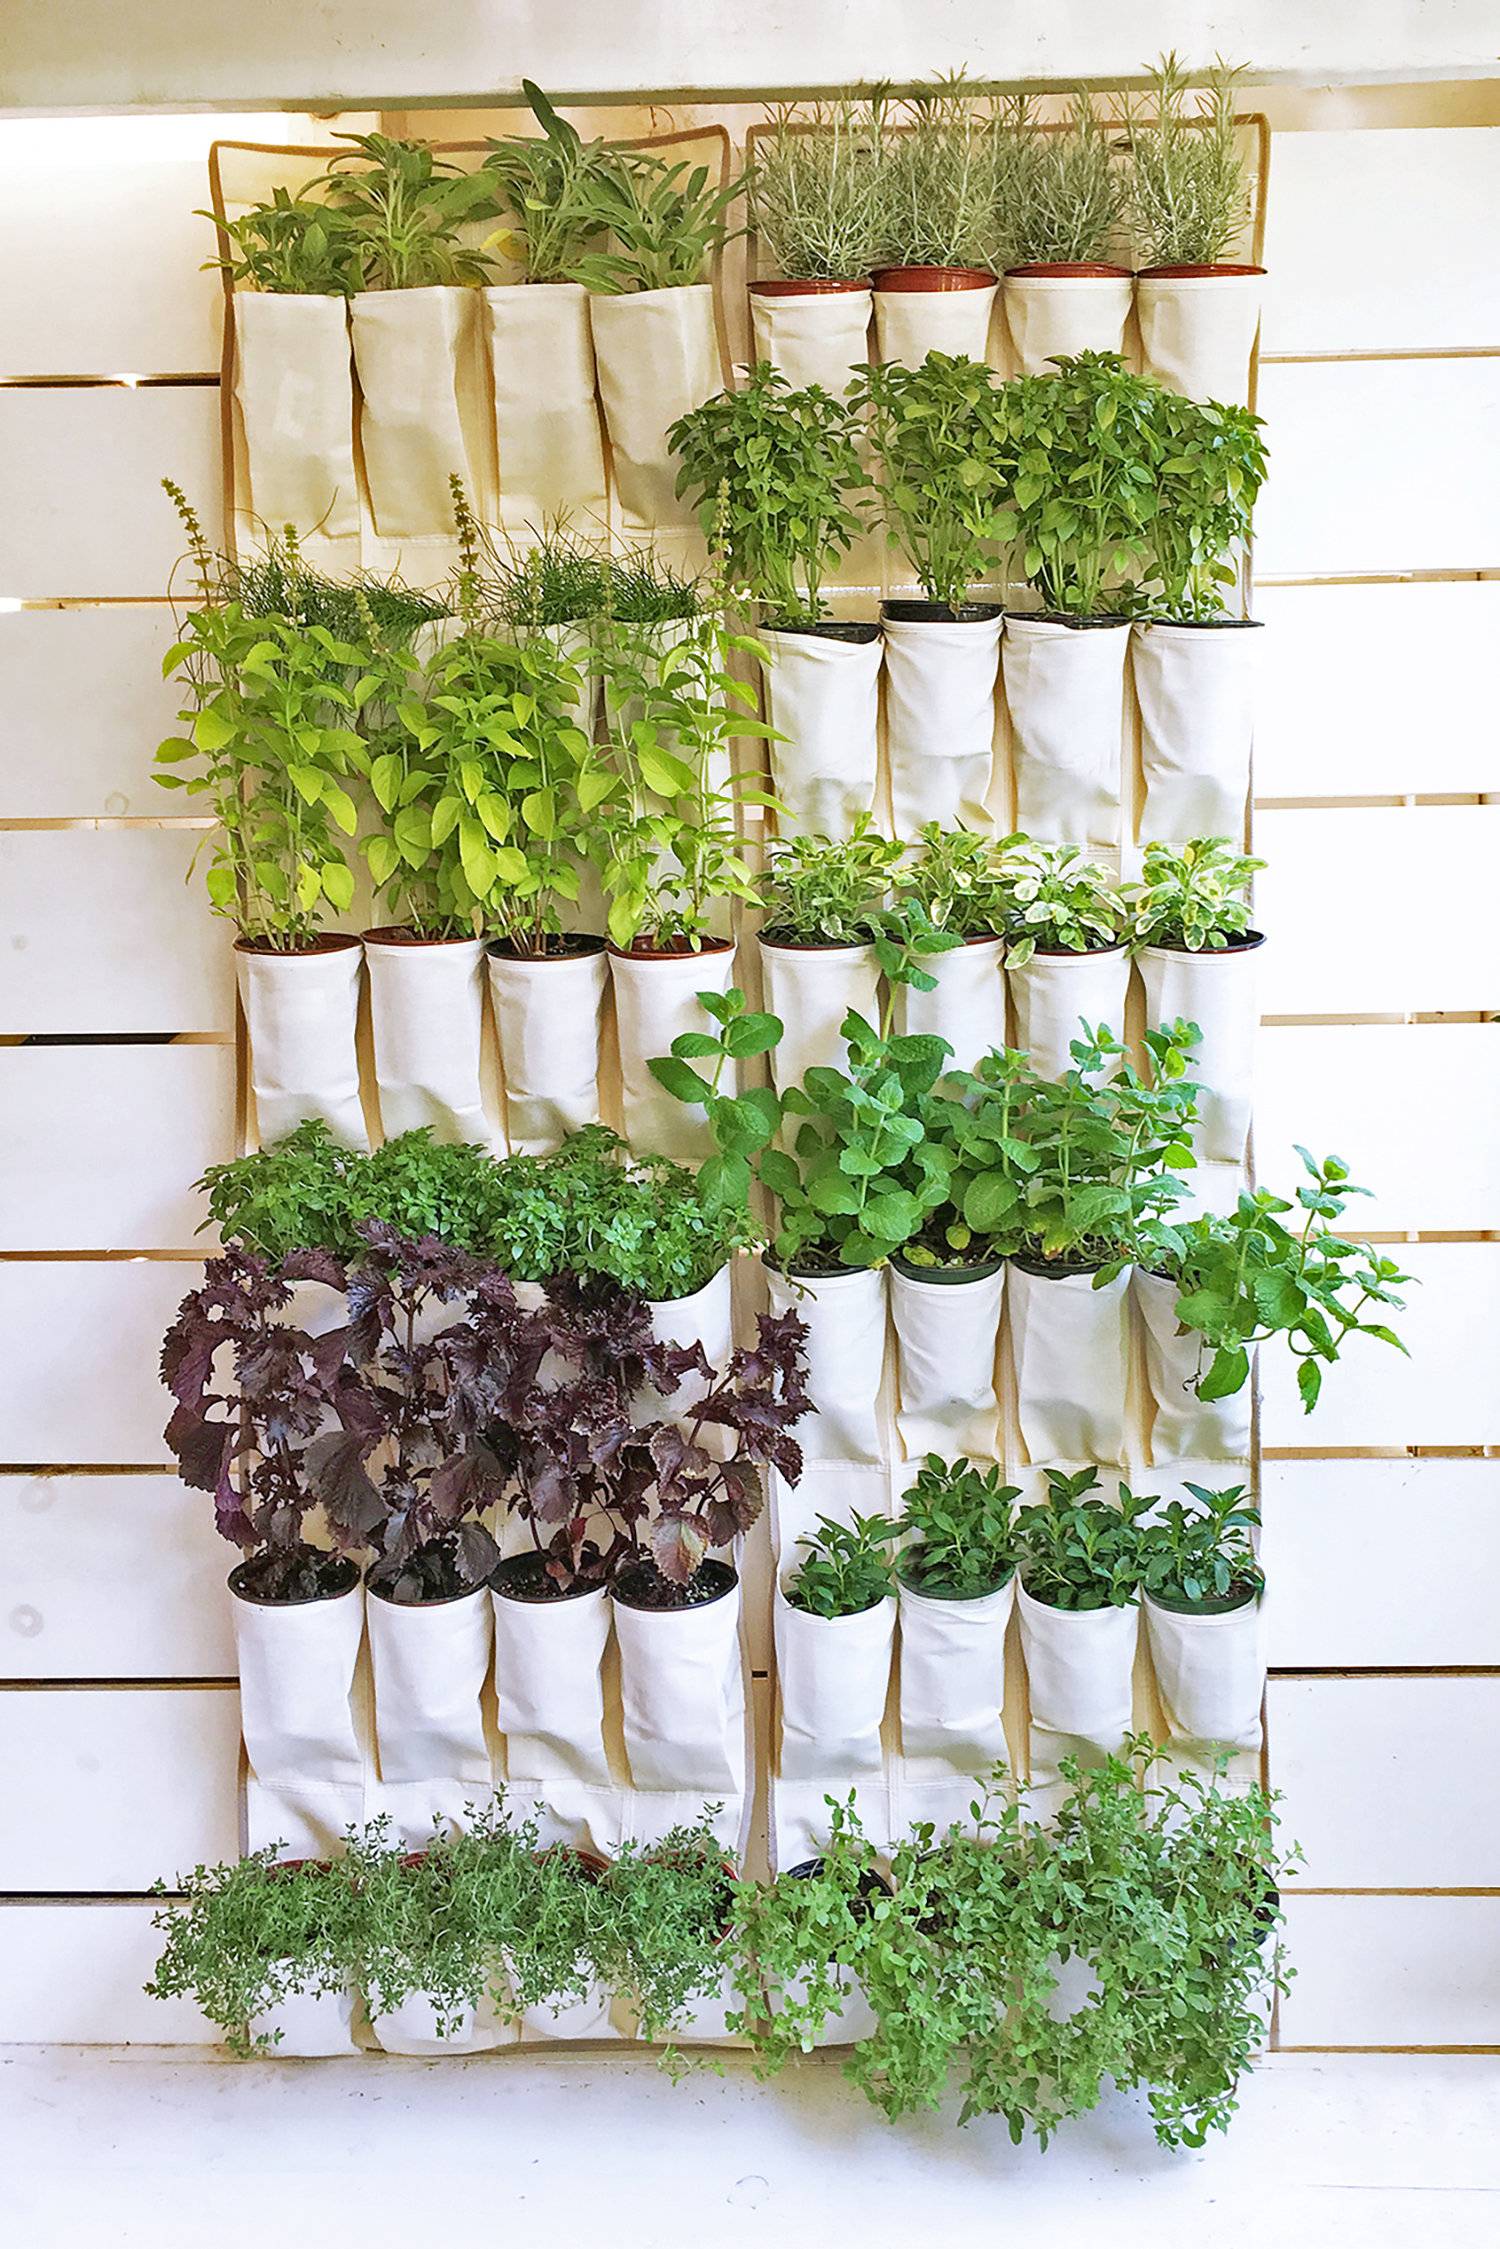 Creative And Easy Diy Indoor Herb Garden Ideas Interior Design